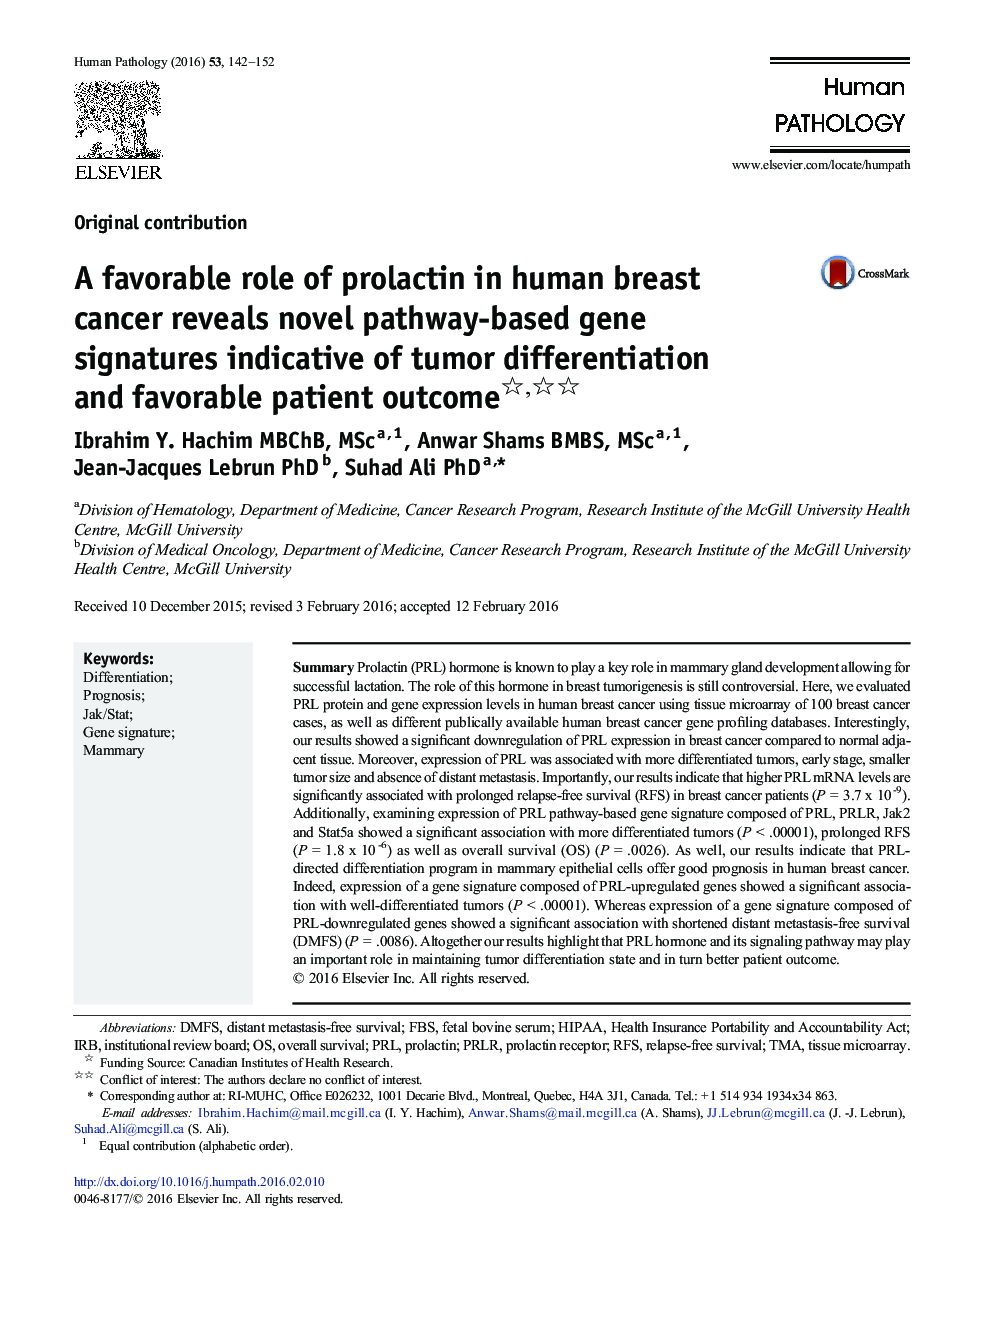 نقش مطلوب پرولاکتین در سرطان سینه انسان نشان دهنده امضای ژن مبتنی بر جدید مبتنی بر تمایز تومور و نتیجه مطلوب بیمار است 